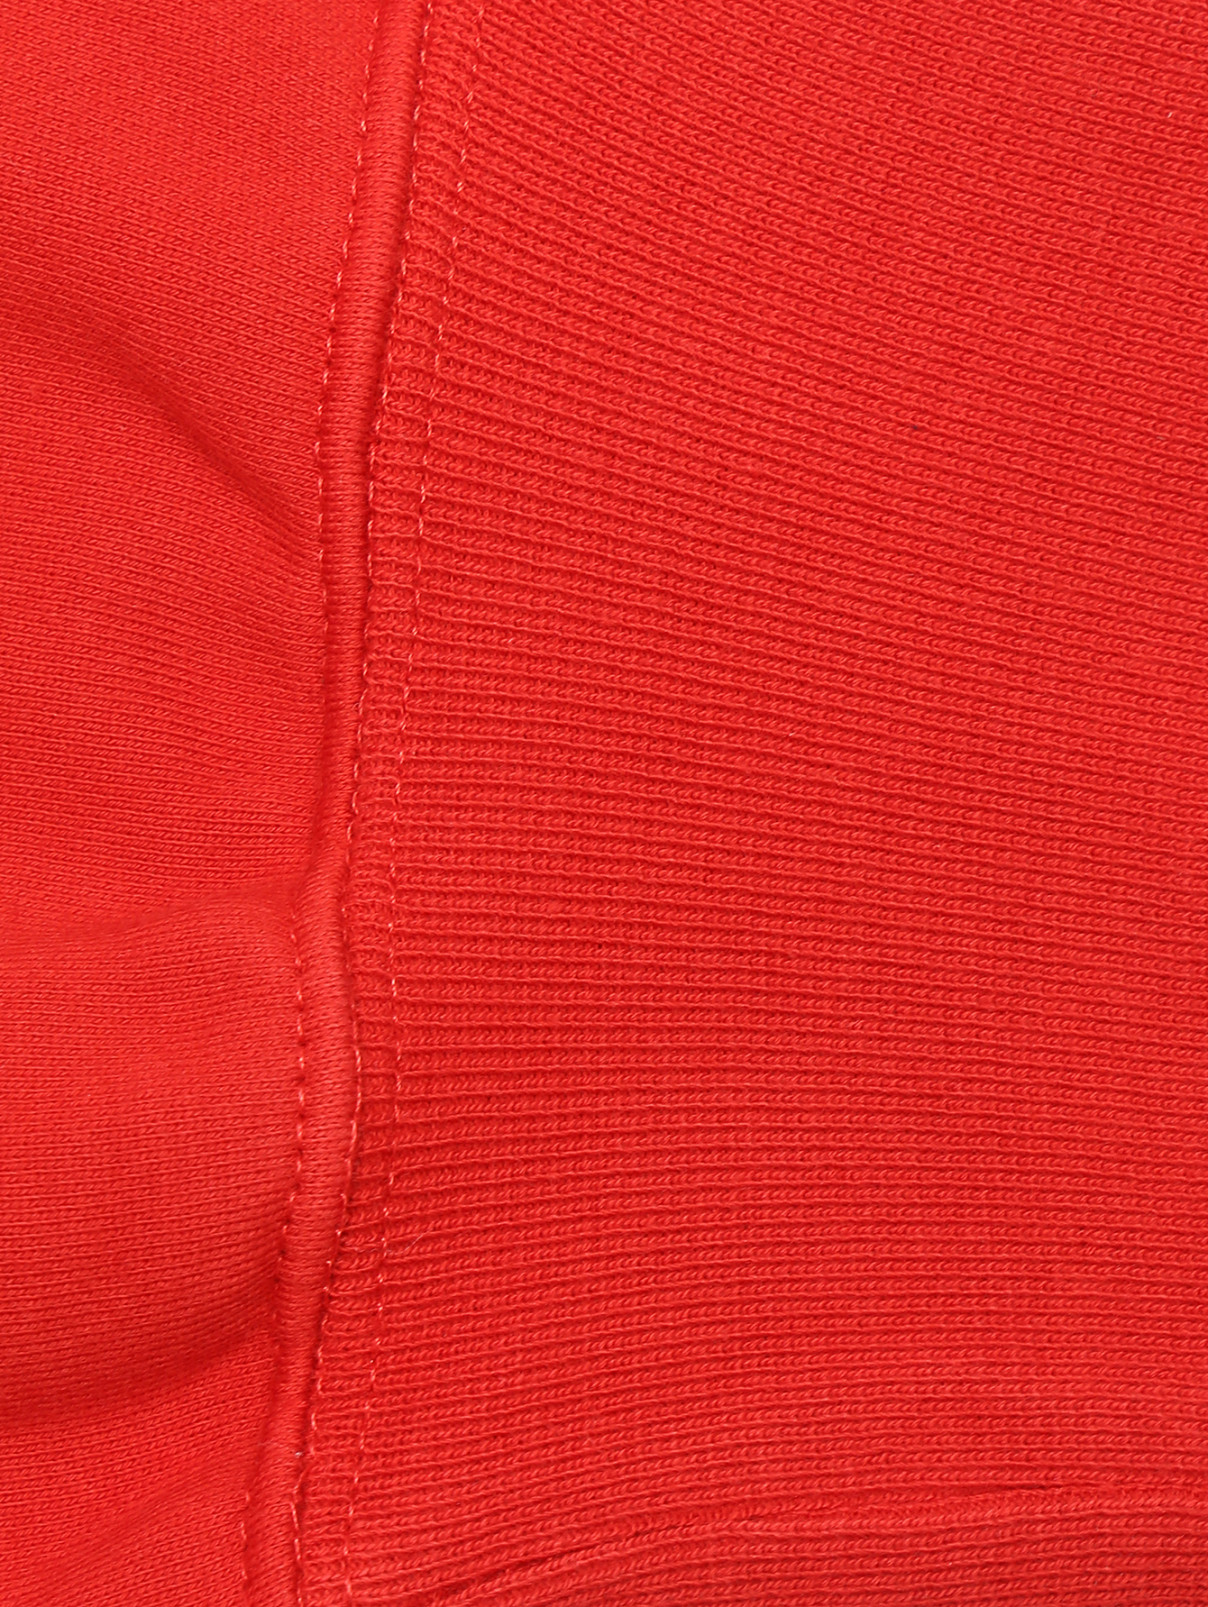 Брюки из хлопка на резинке Ermanno Scervino  –  Деталь1  – Цвет:  Красный